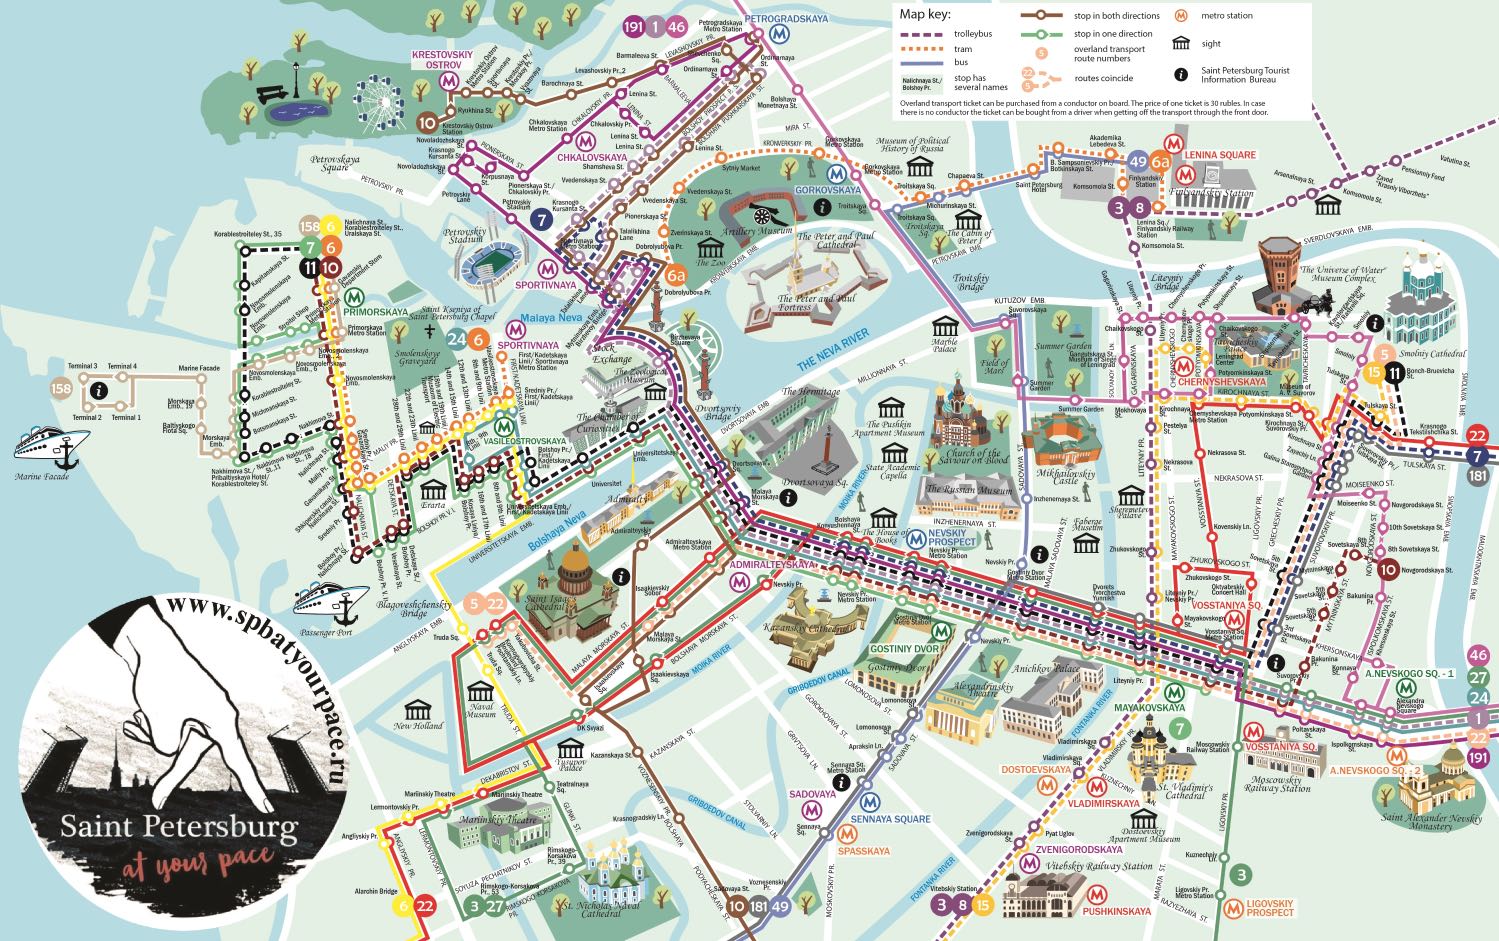 St Petersburg tourist map City center - High resolution